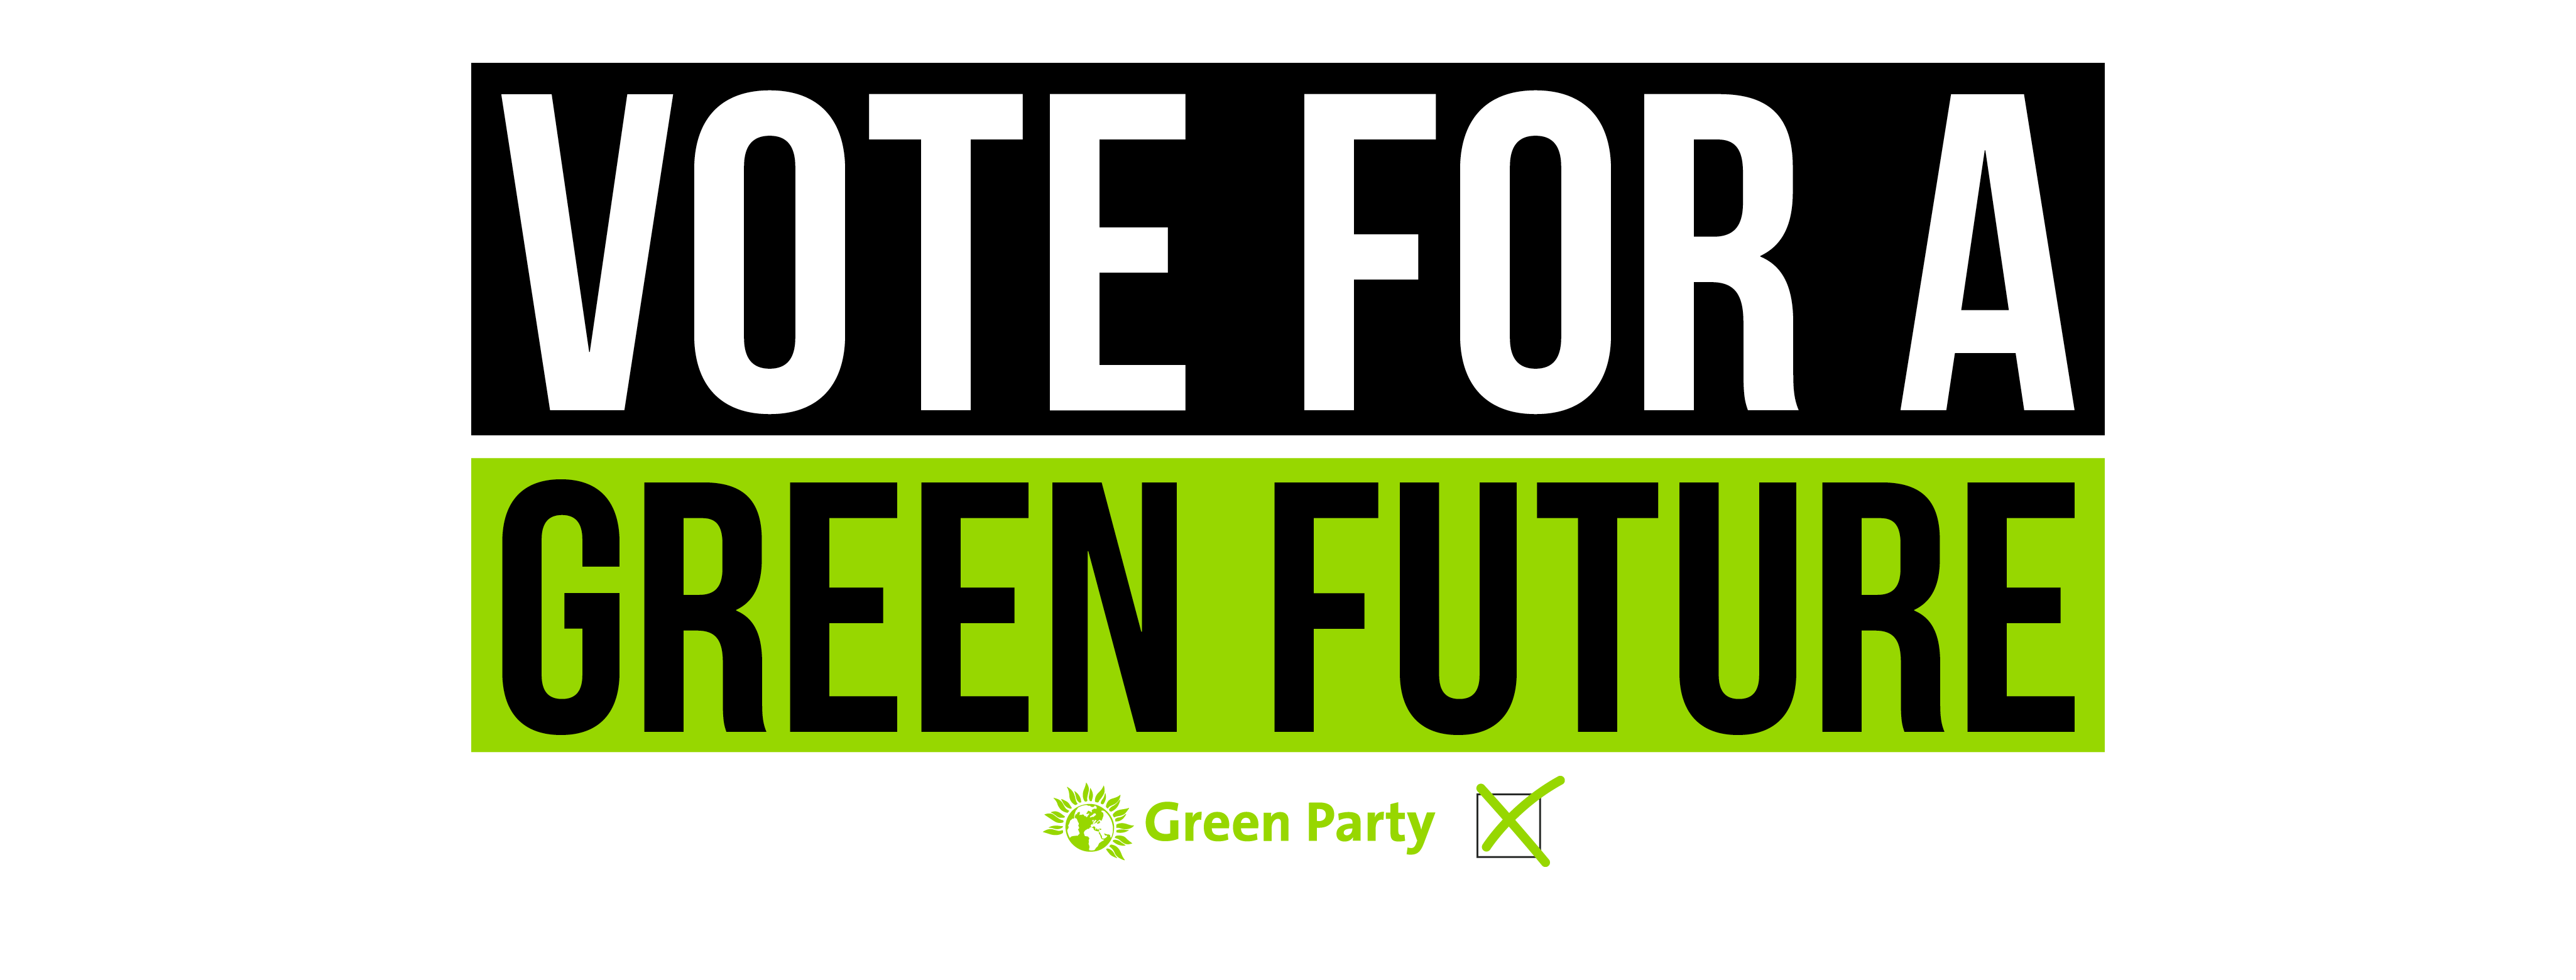 Vote for a green future